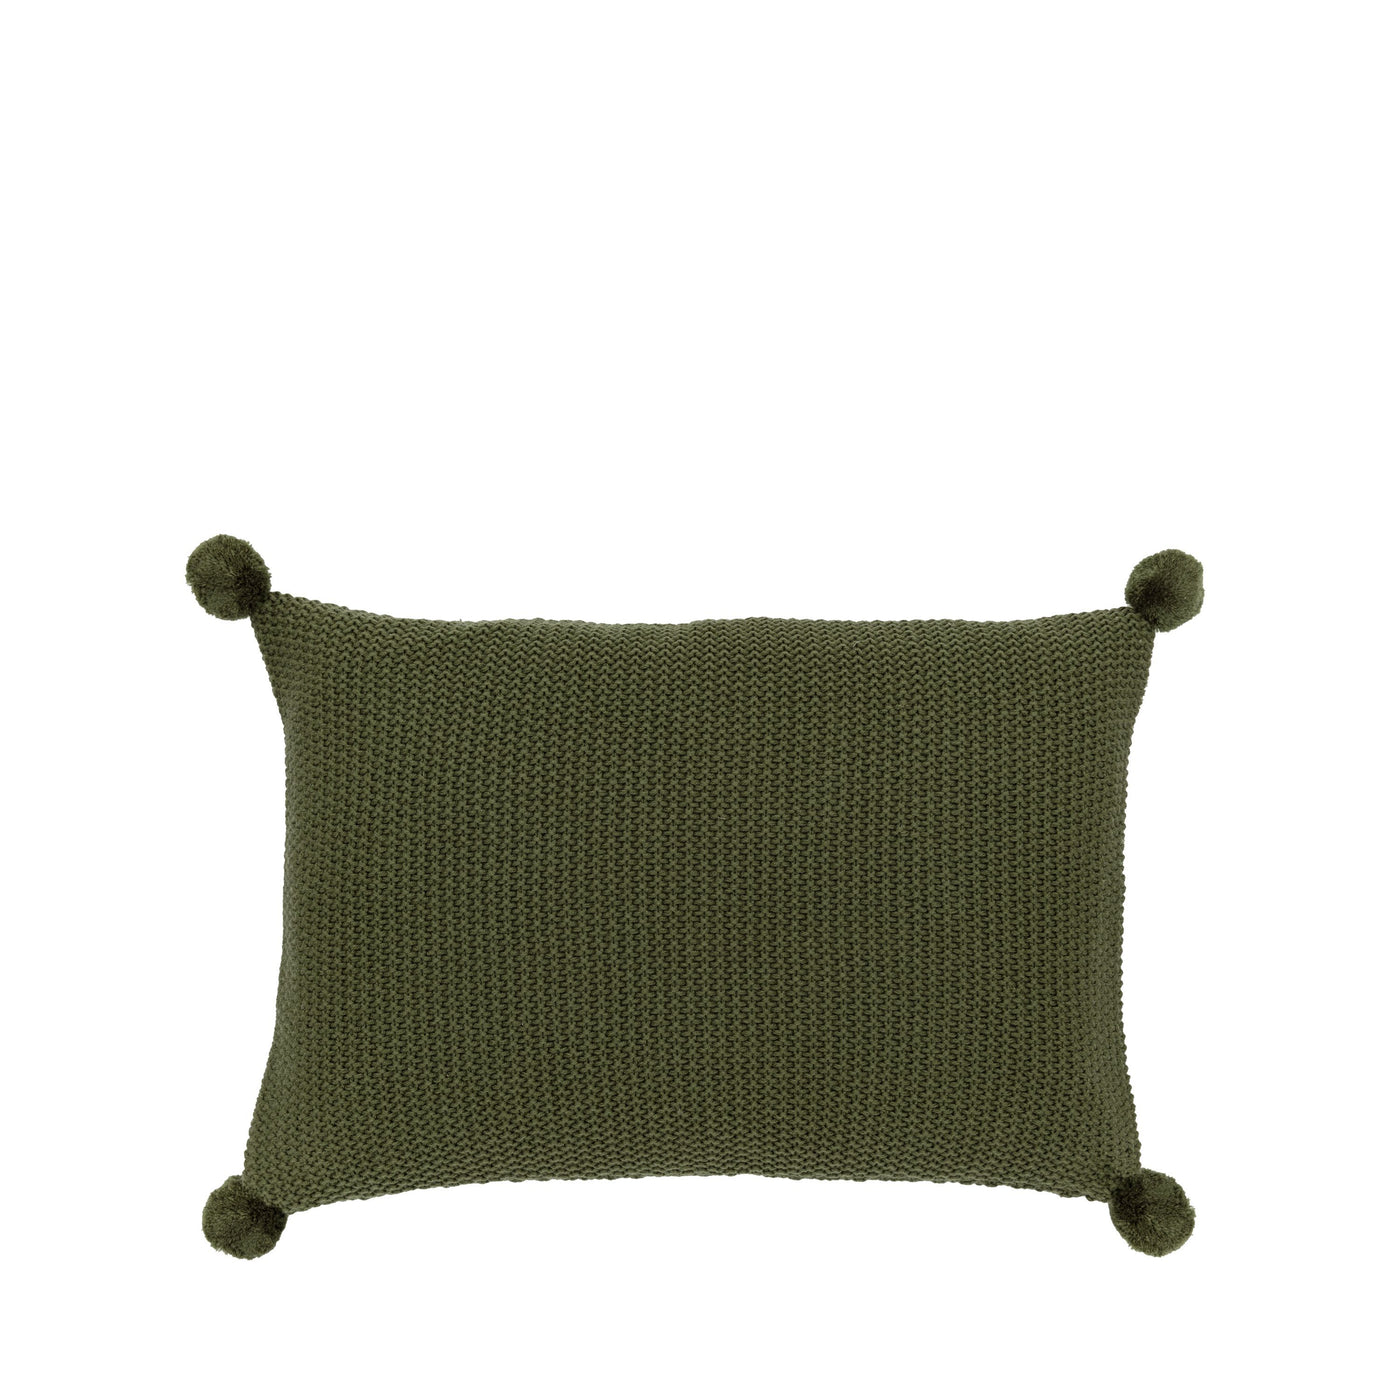 Moss Stitch PomPom Cushion Cover